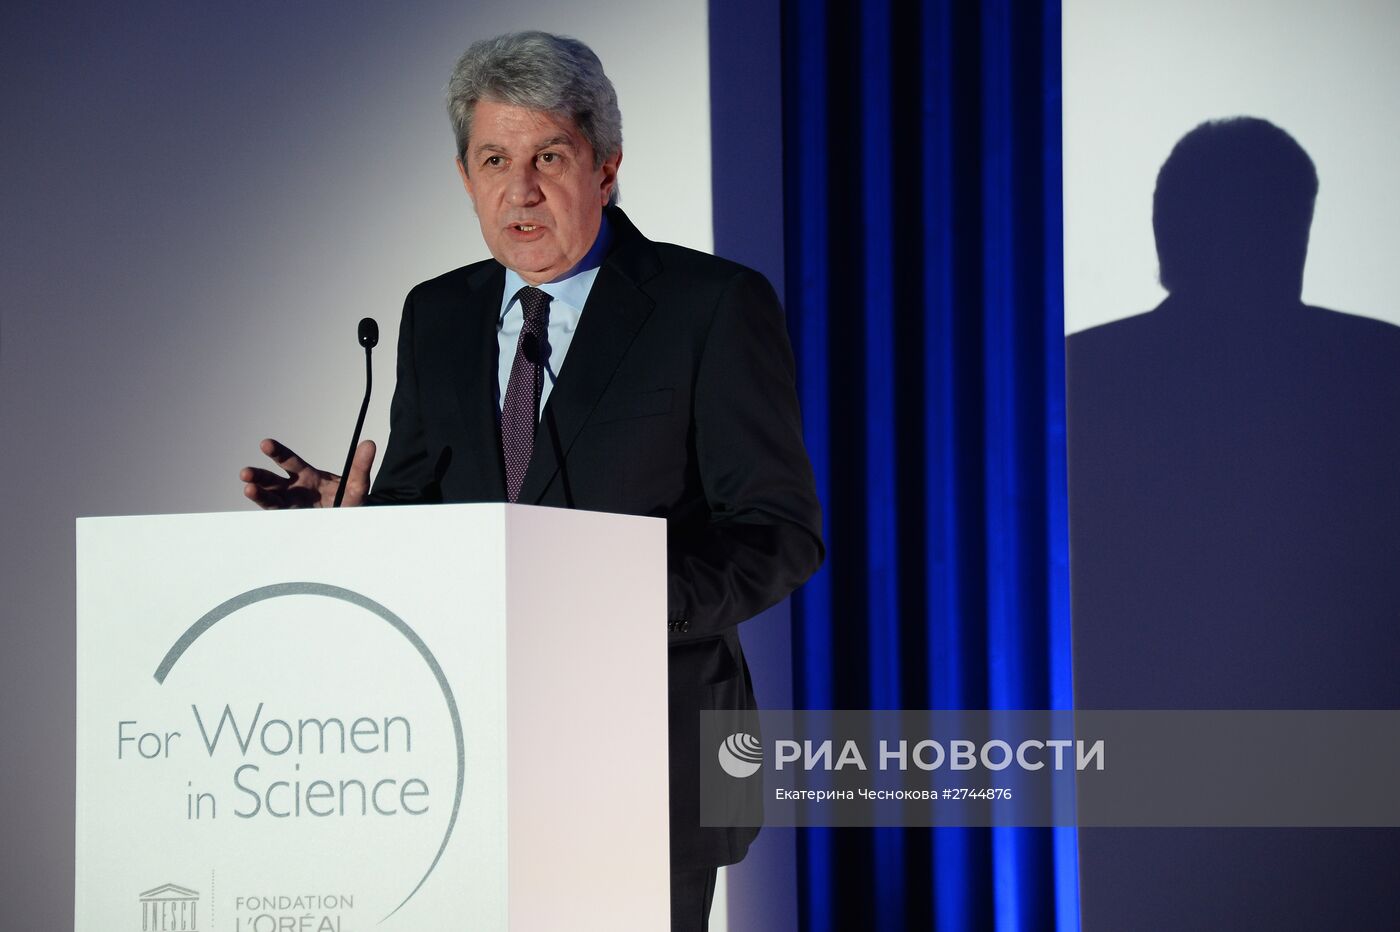 Вручение национальных стипендий L’ORÉAL-UNESCO "Для женщин в науке" 2015